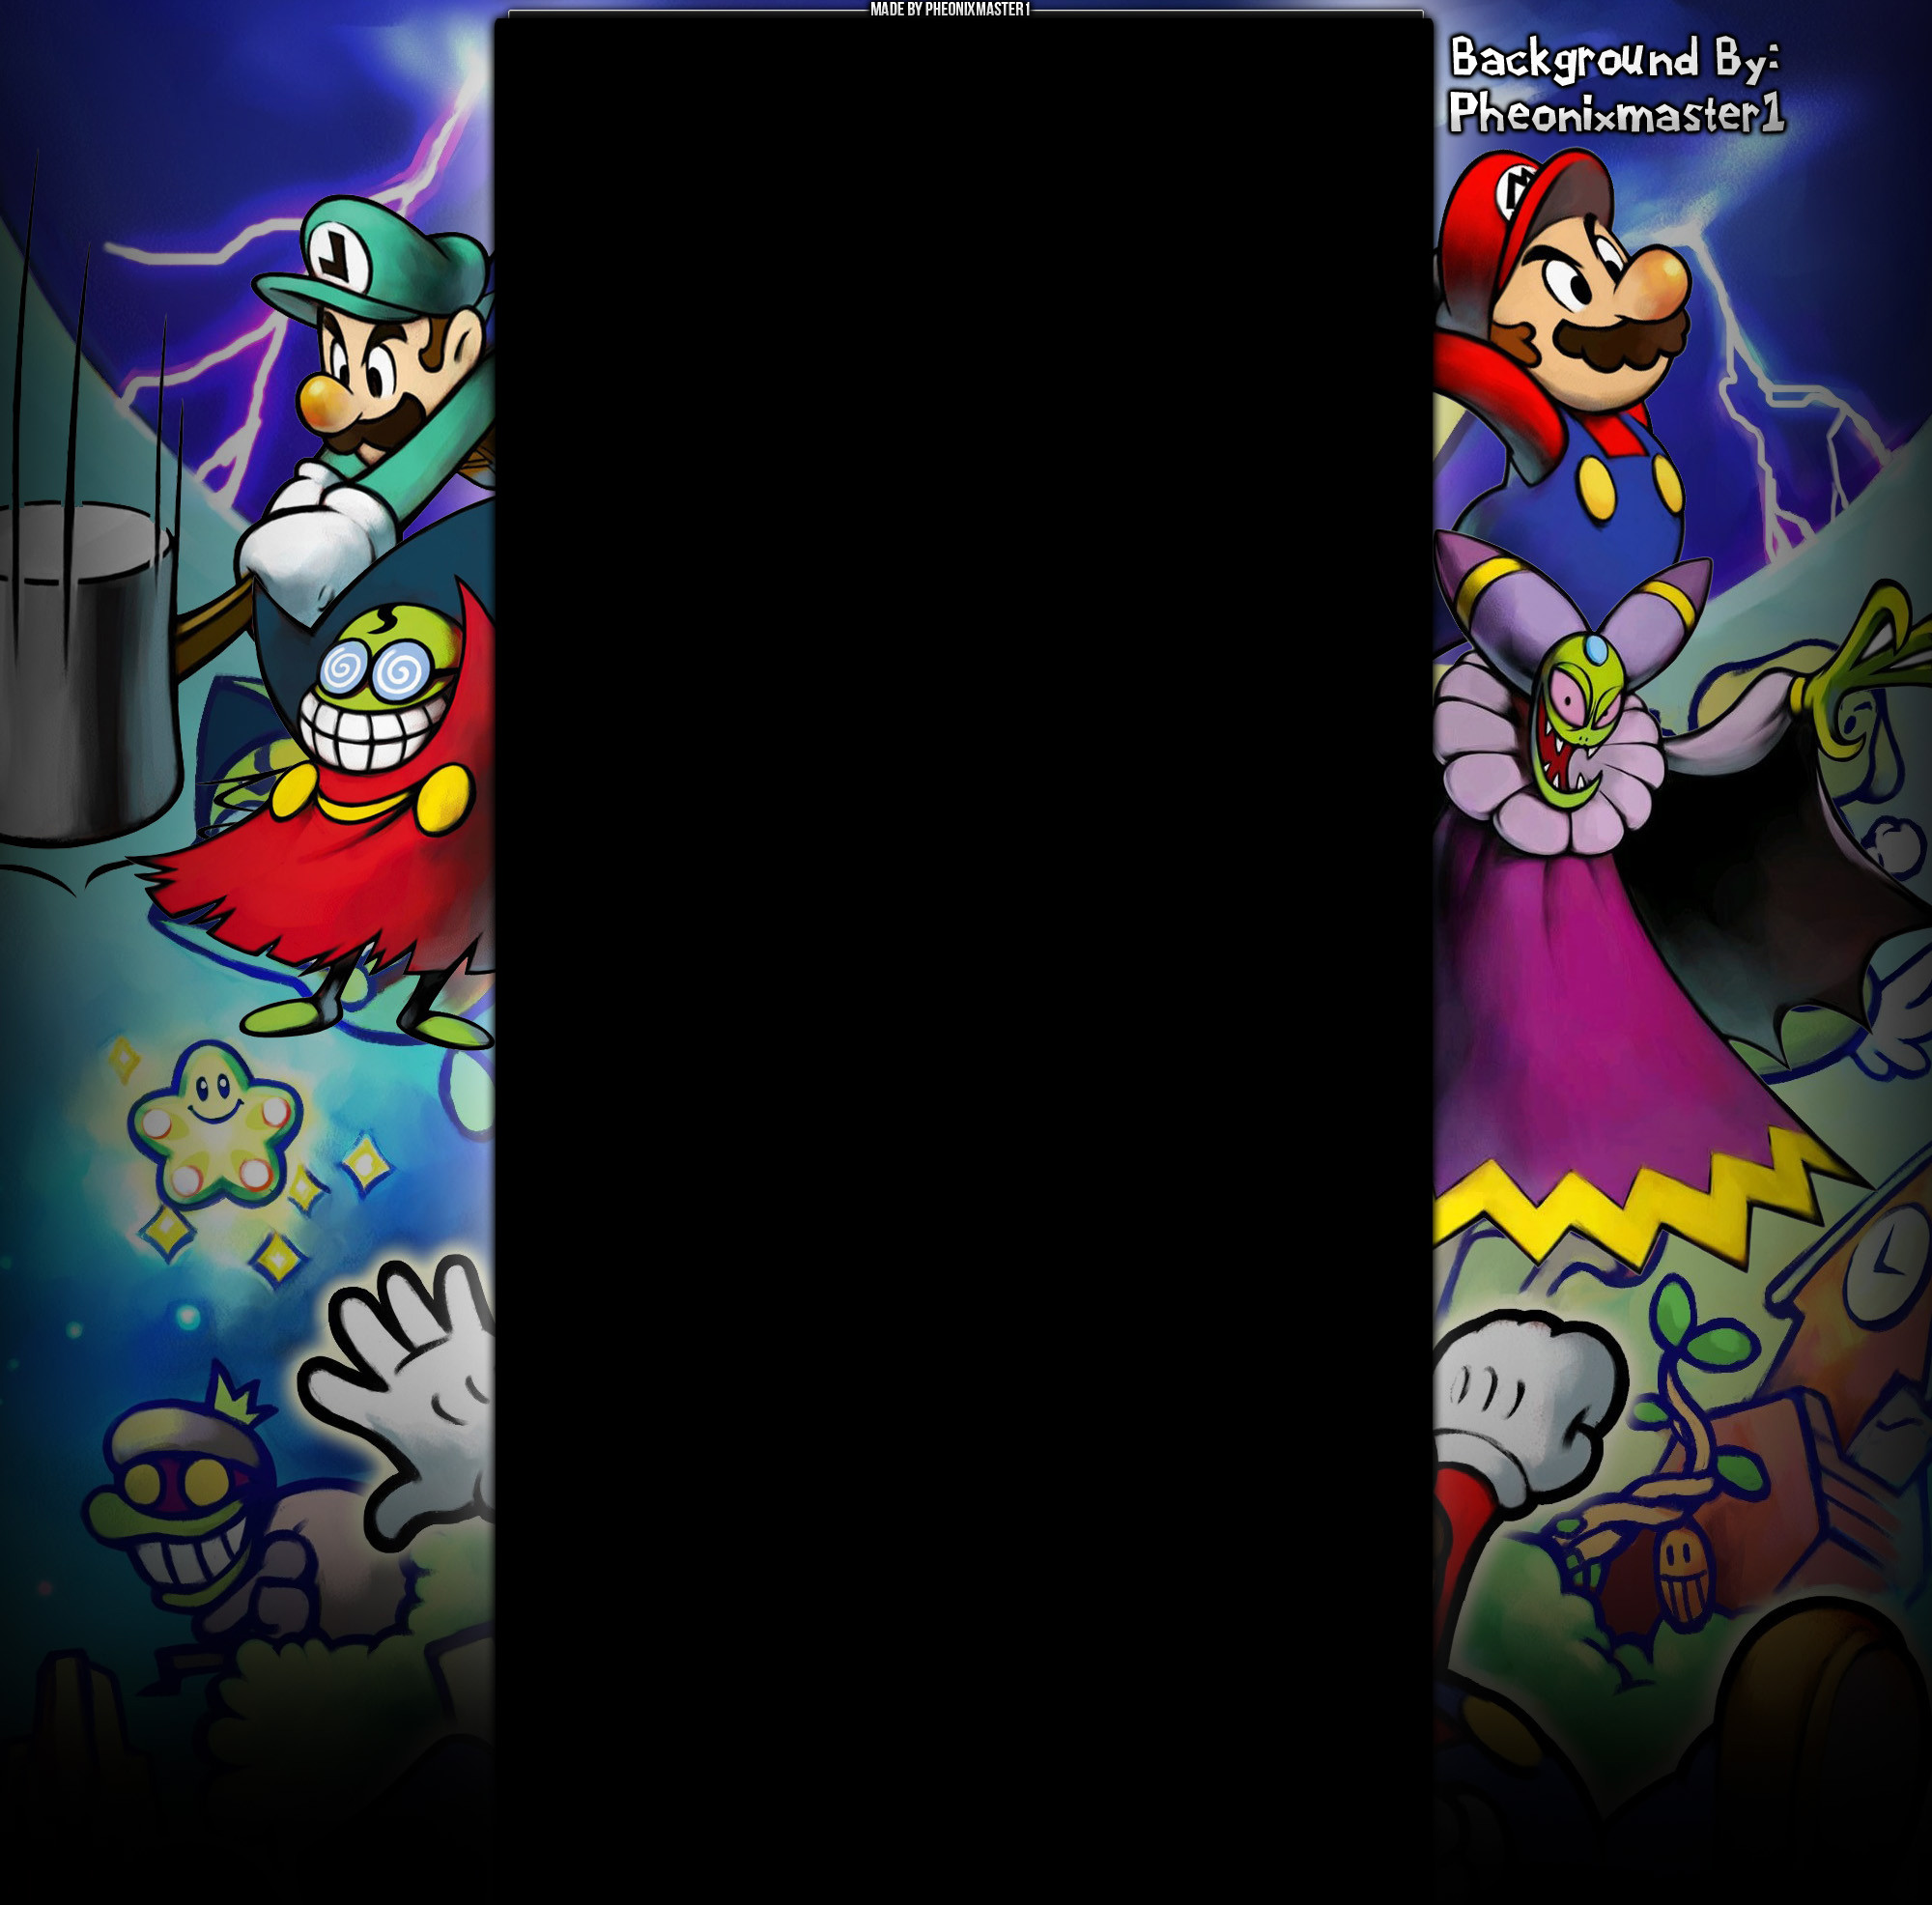 2000x1972 ... Mario and Luigi Superstar Saga Youtube Background by Pheonixmaster1